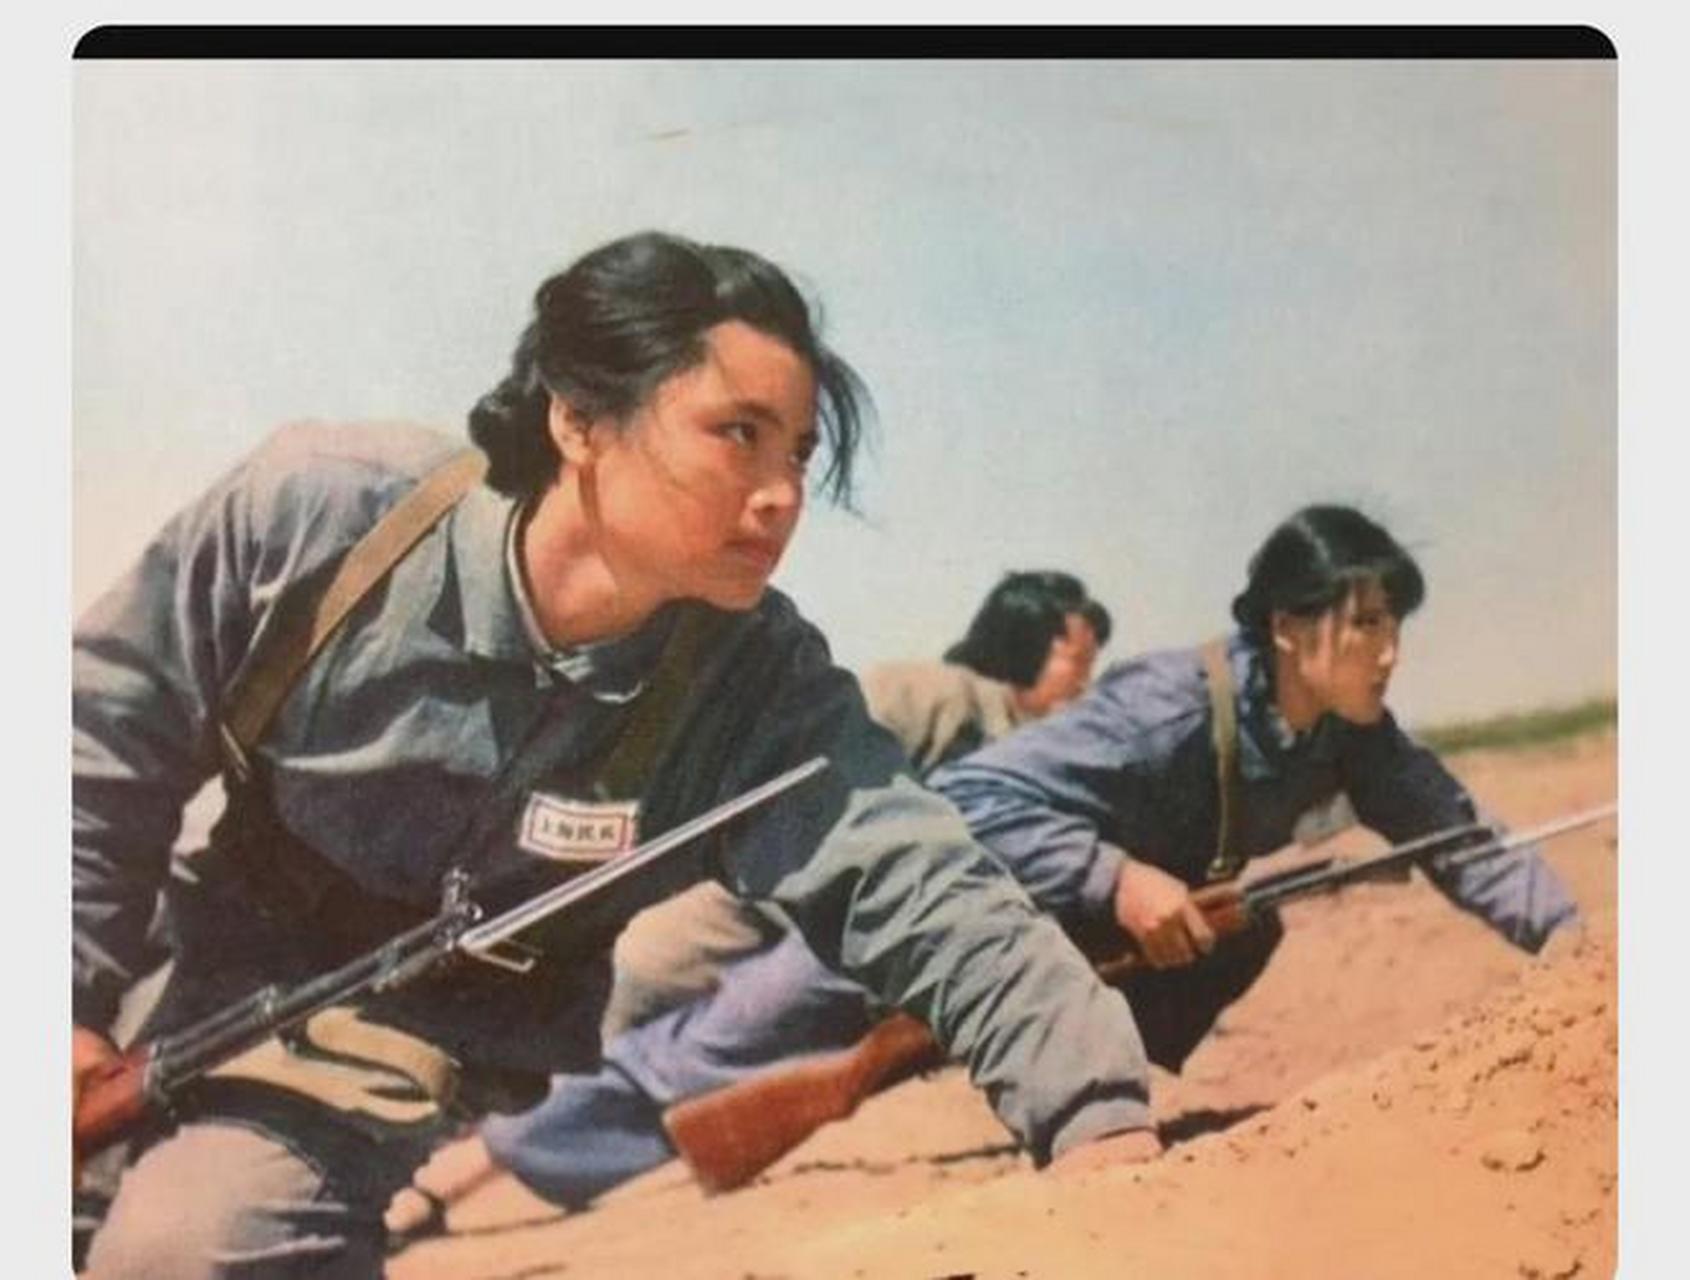 上海宝山某钢铁厂里,几名身穿军装的女民兵正在进行激烈的作战训练